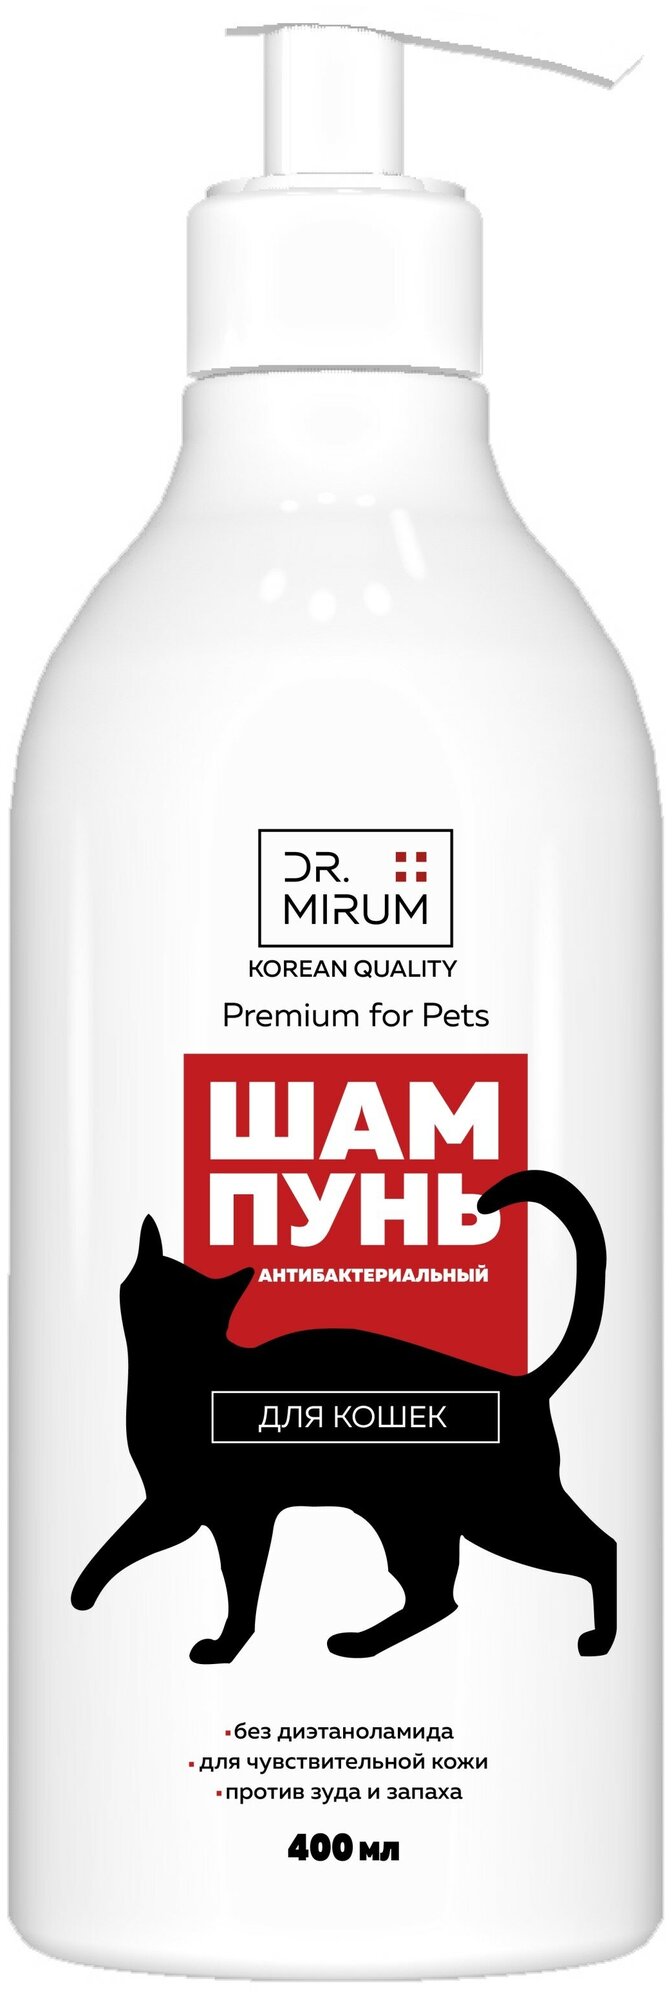 Шампунь для кошек Dr. Mirum Premium For Pets антибактериальный с хлоргексидином, 400 мл